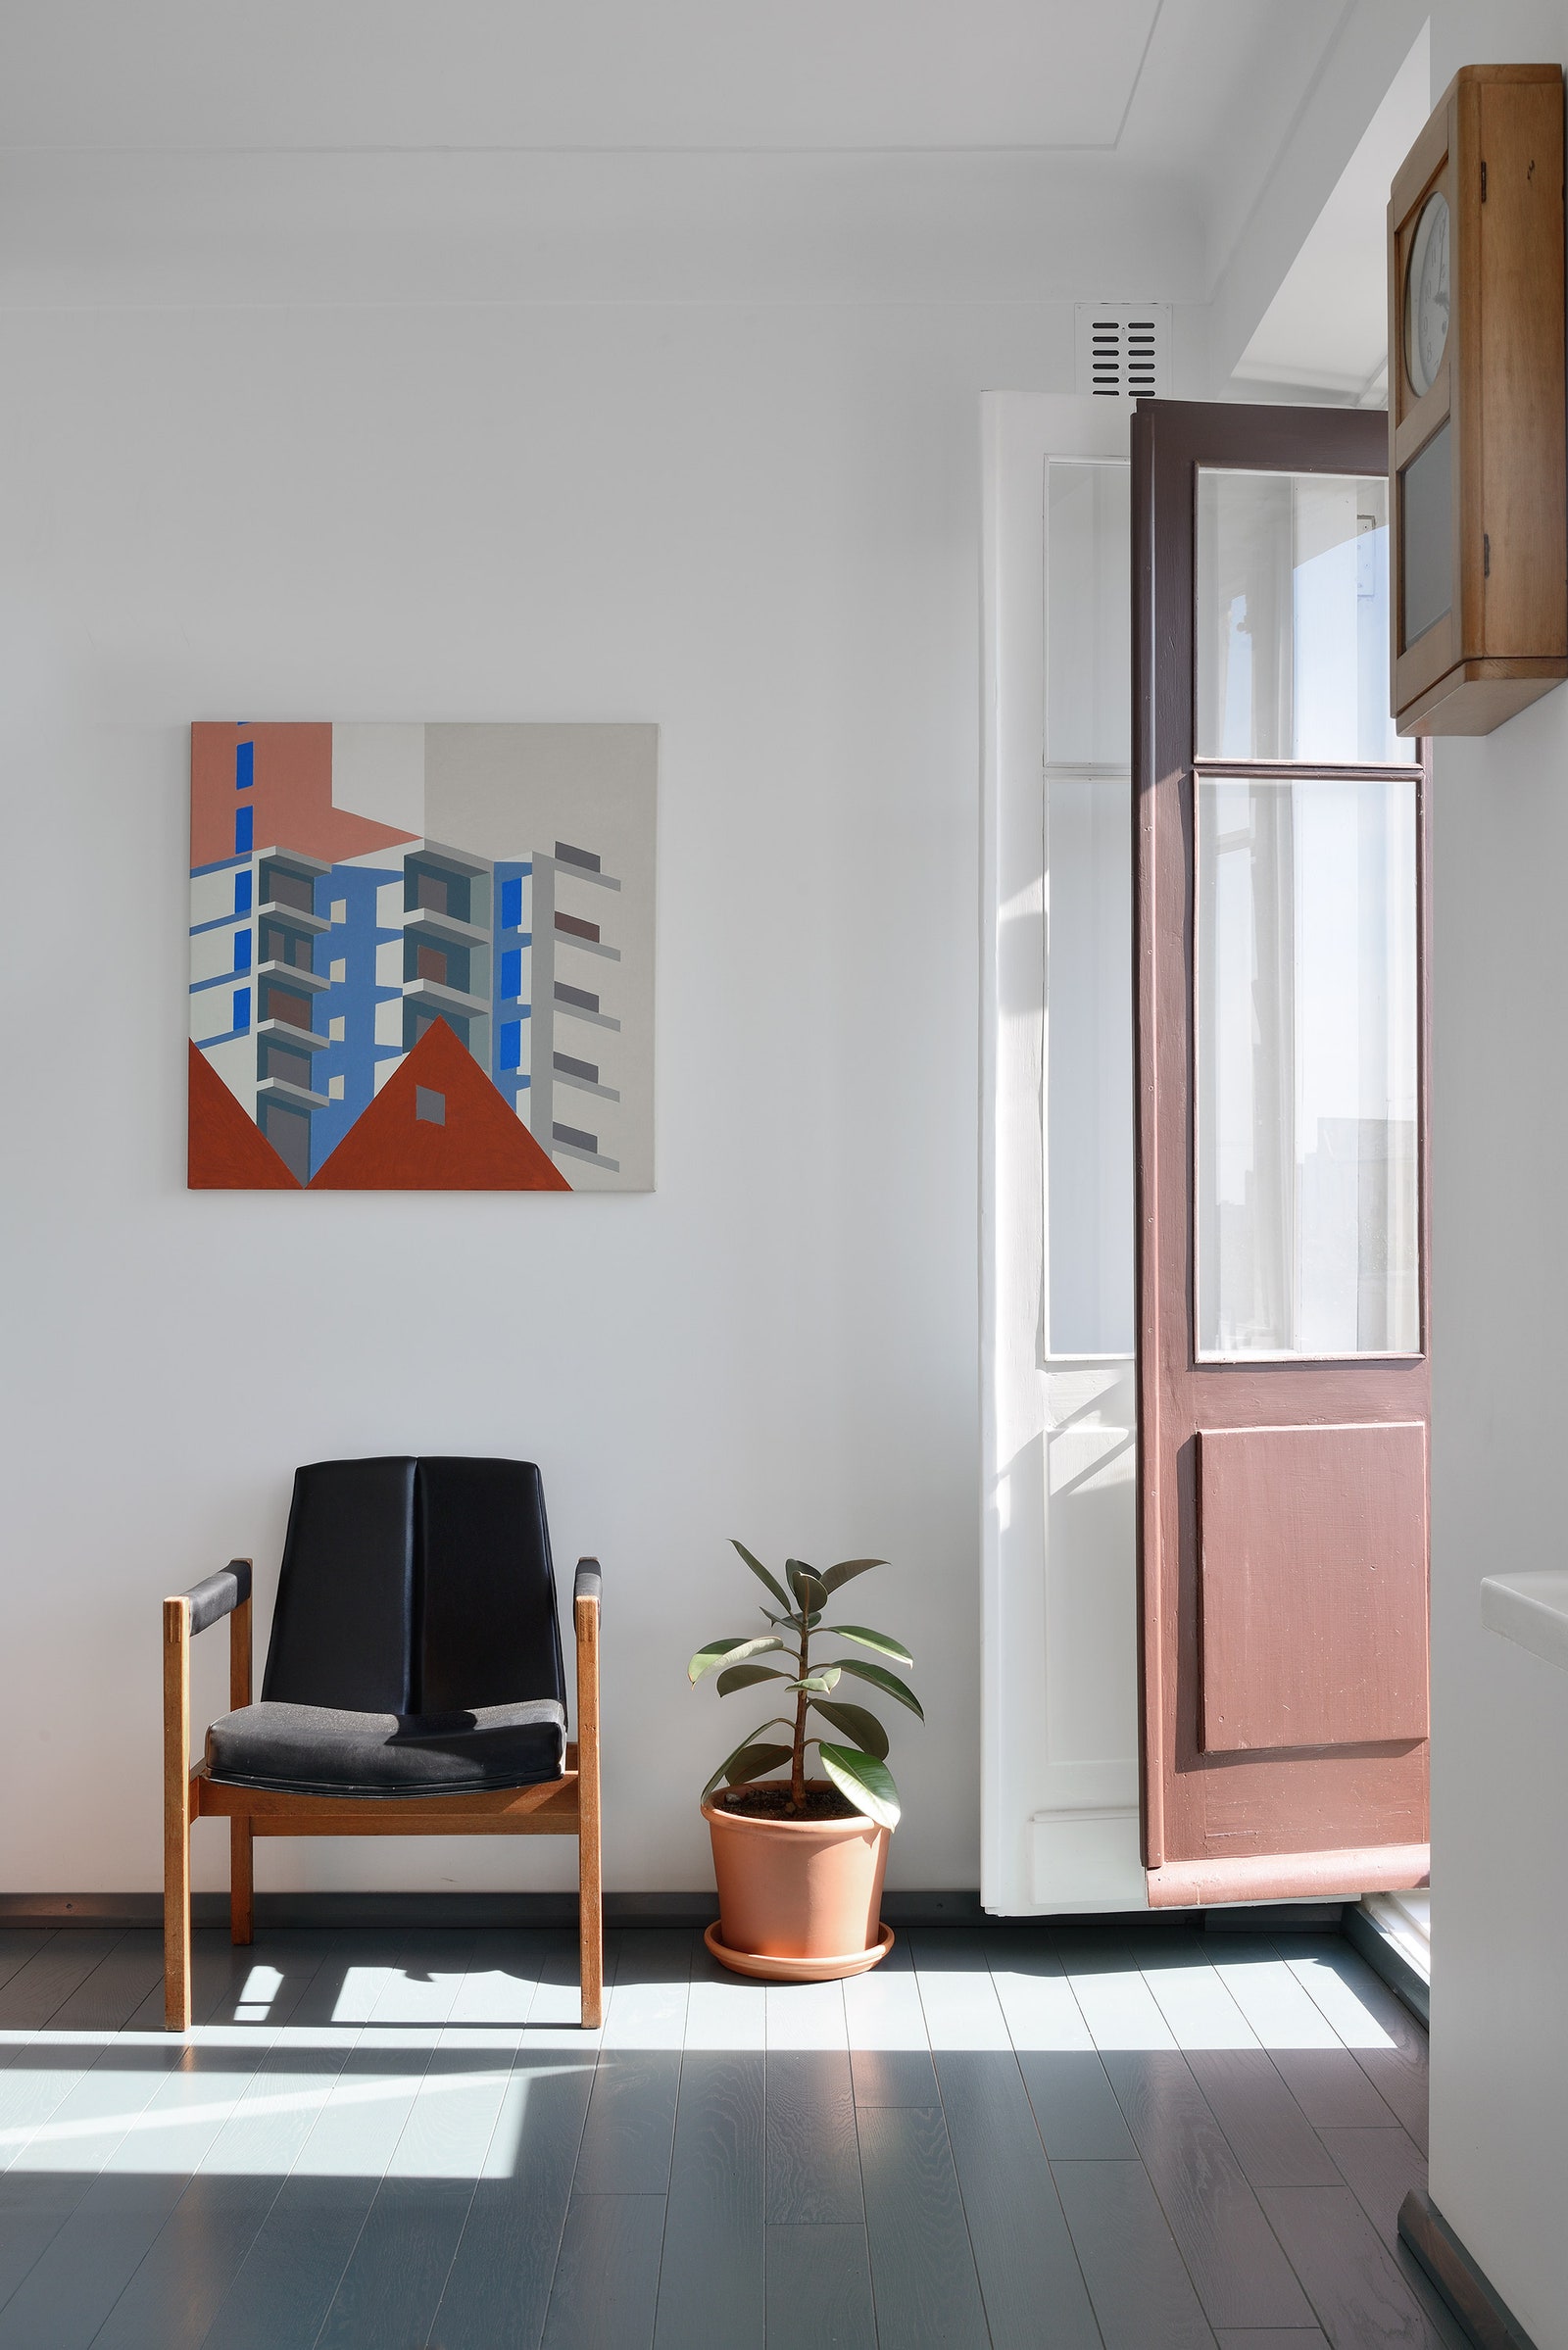 Фрагмент гостиной с английским креслом 1950х годов. На стене картина работы самарского художника Александра Зайцева....